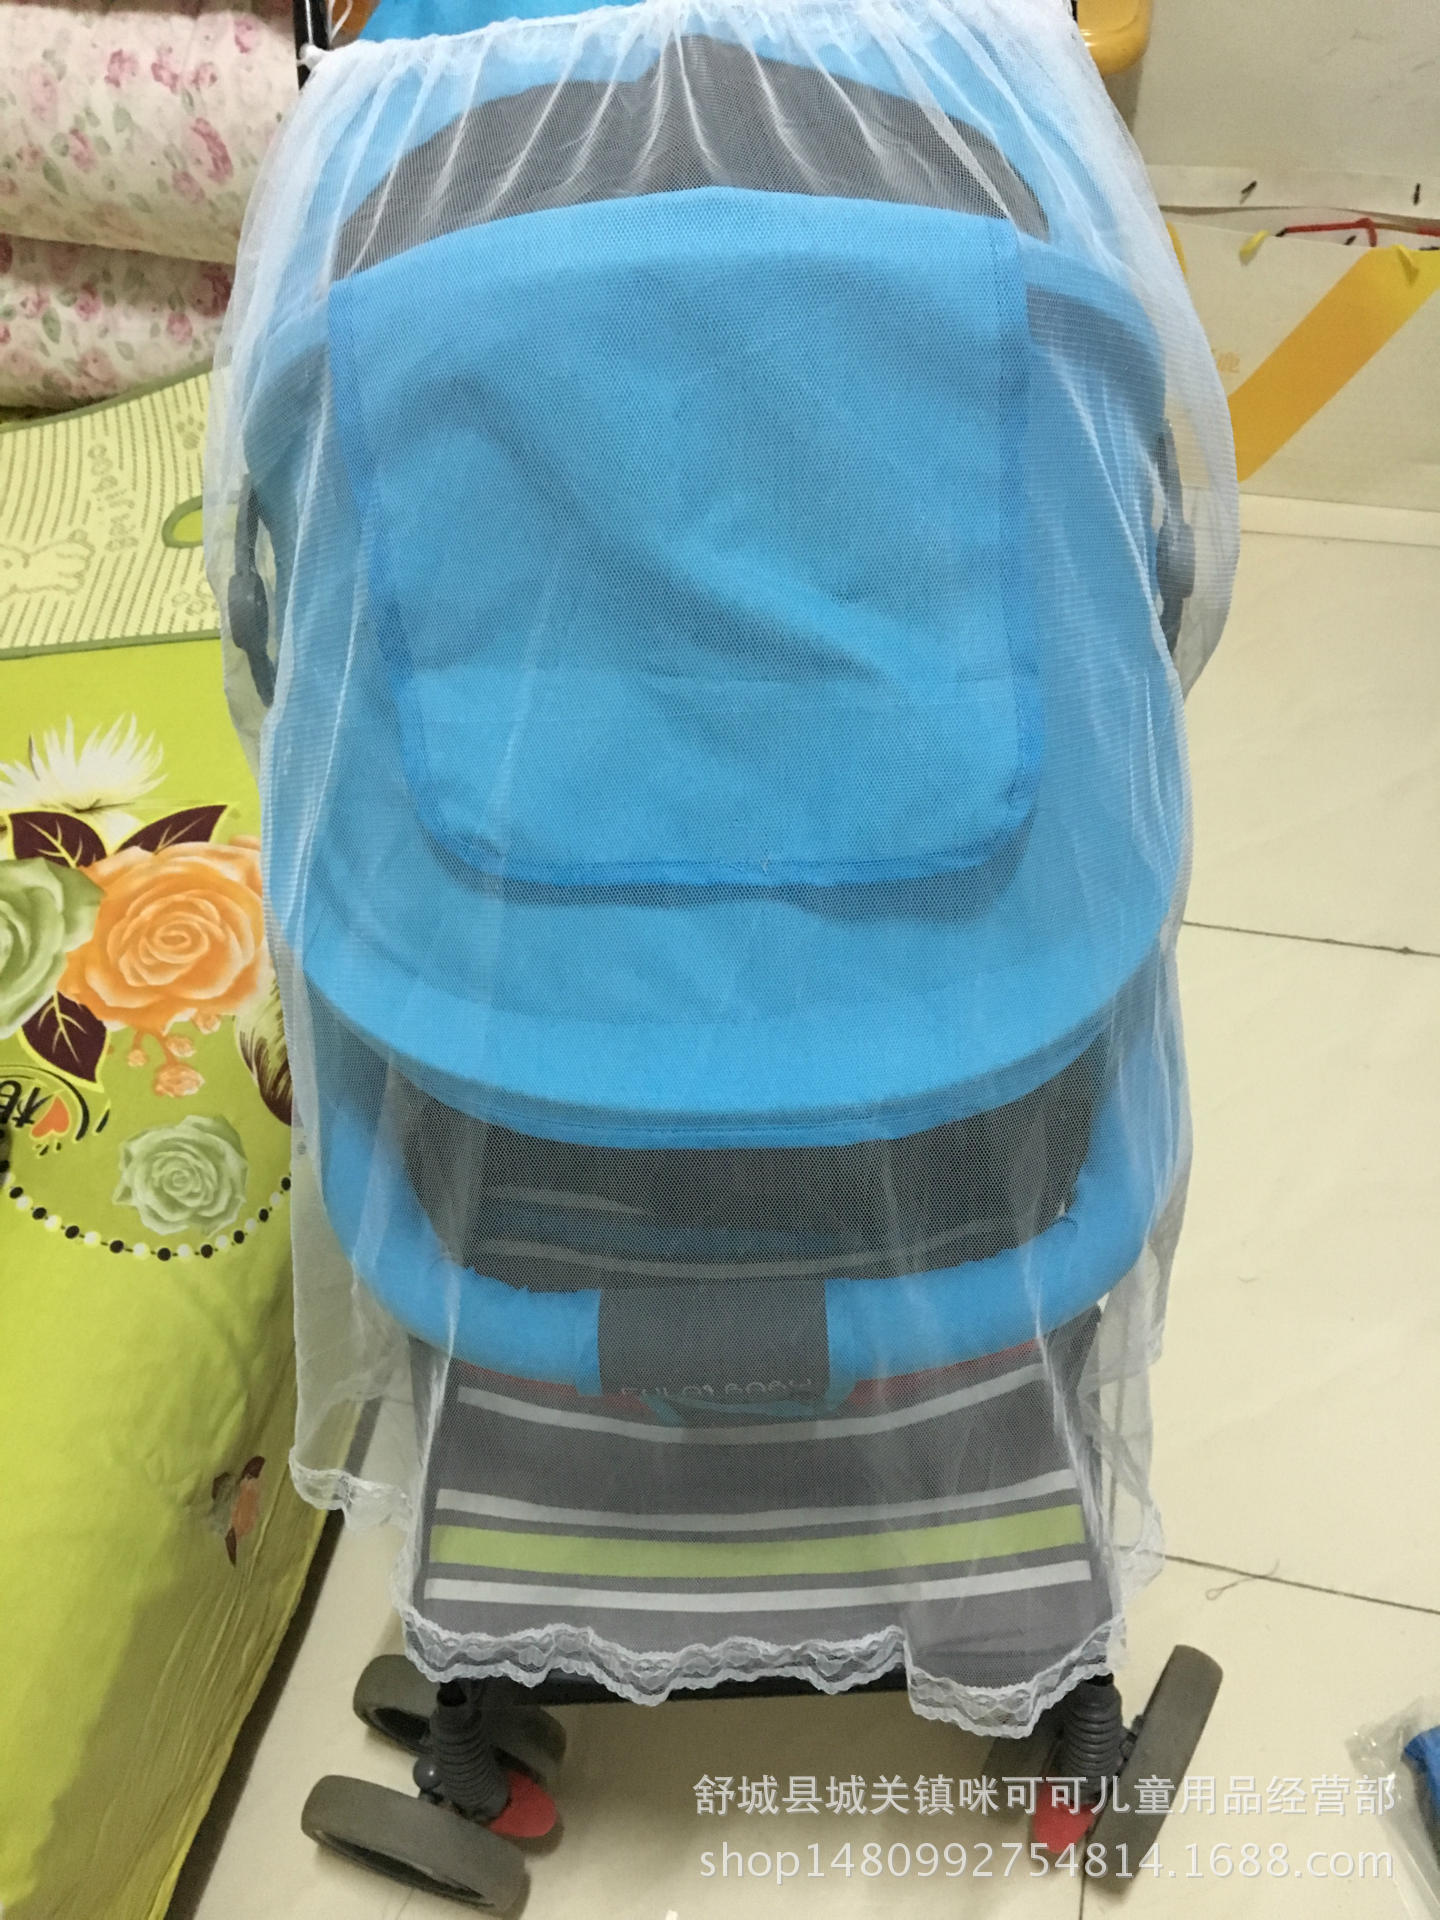 婴儿推车蚊帐全罩式通用款拉锁式婴儿车蚊帐手推车蚊帐防虫防蚊罩-阿里巴巴